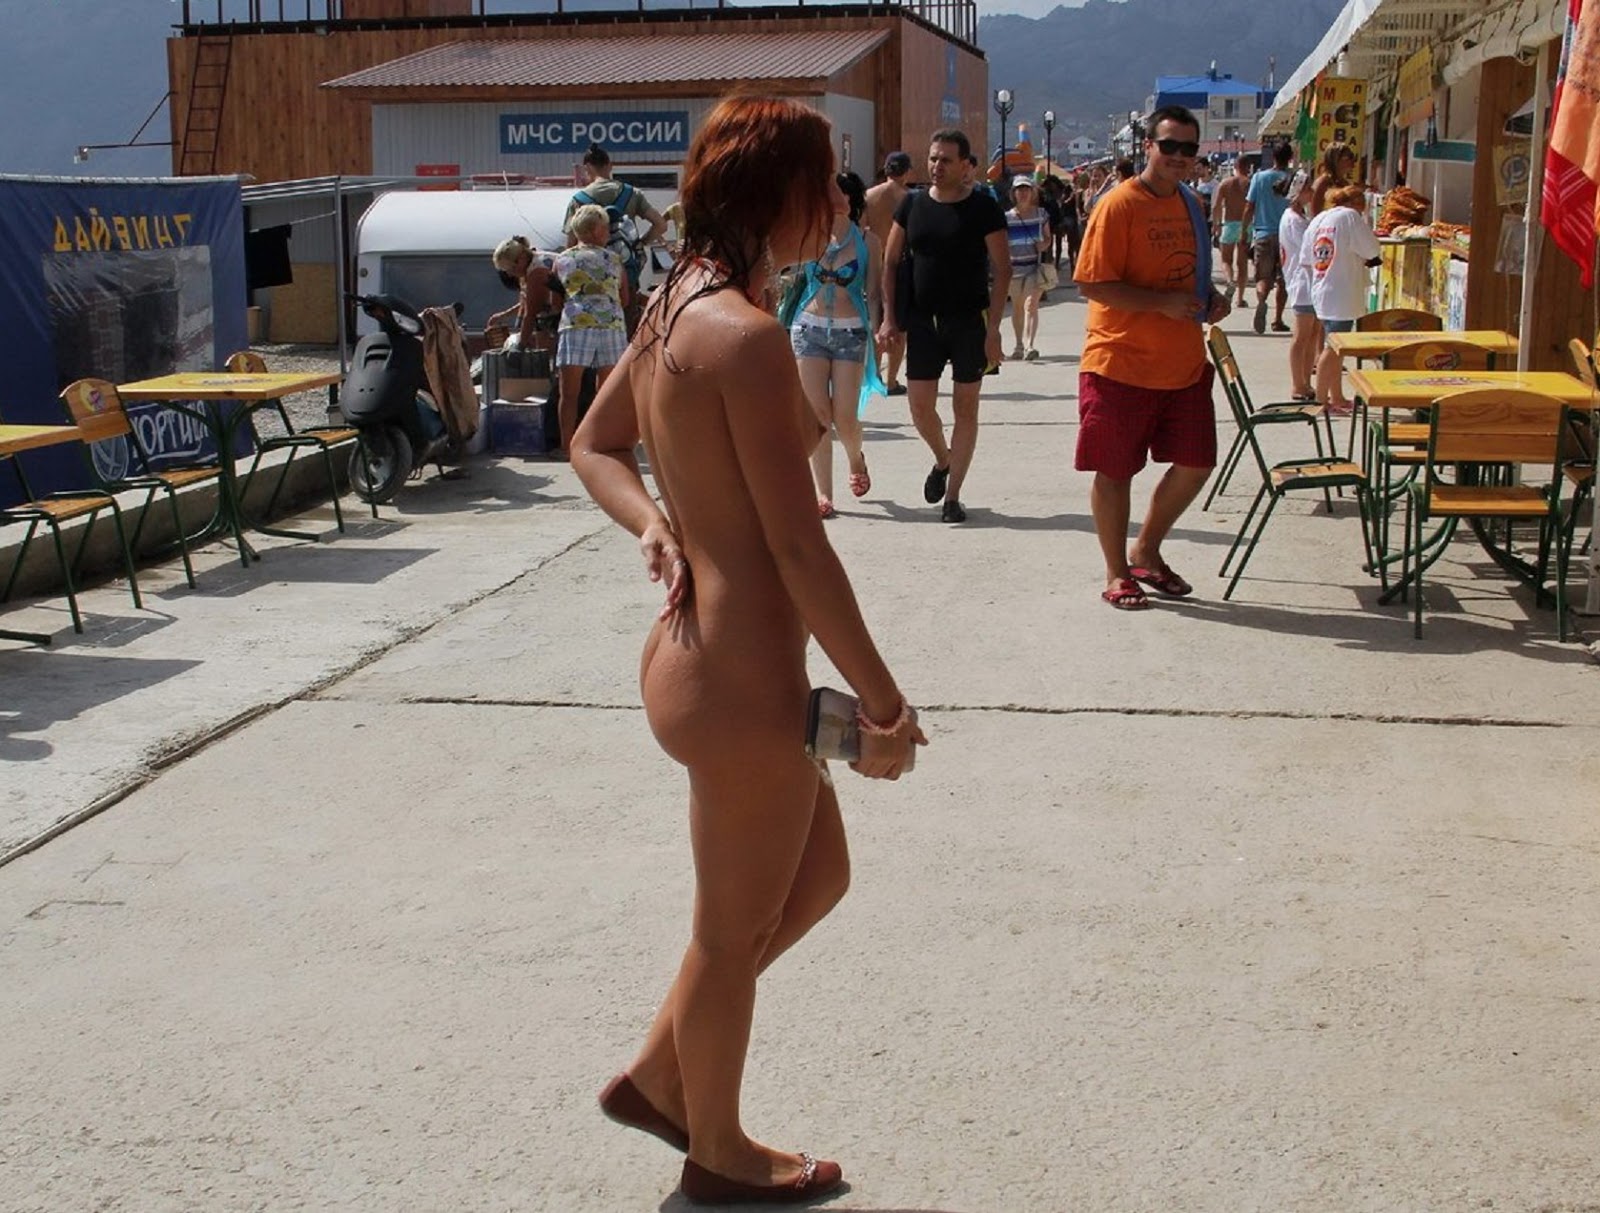 Crimean nudist festivals